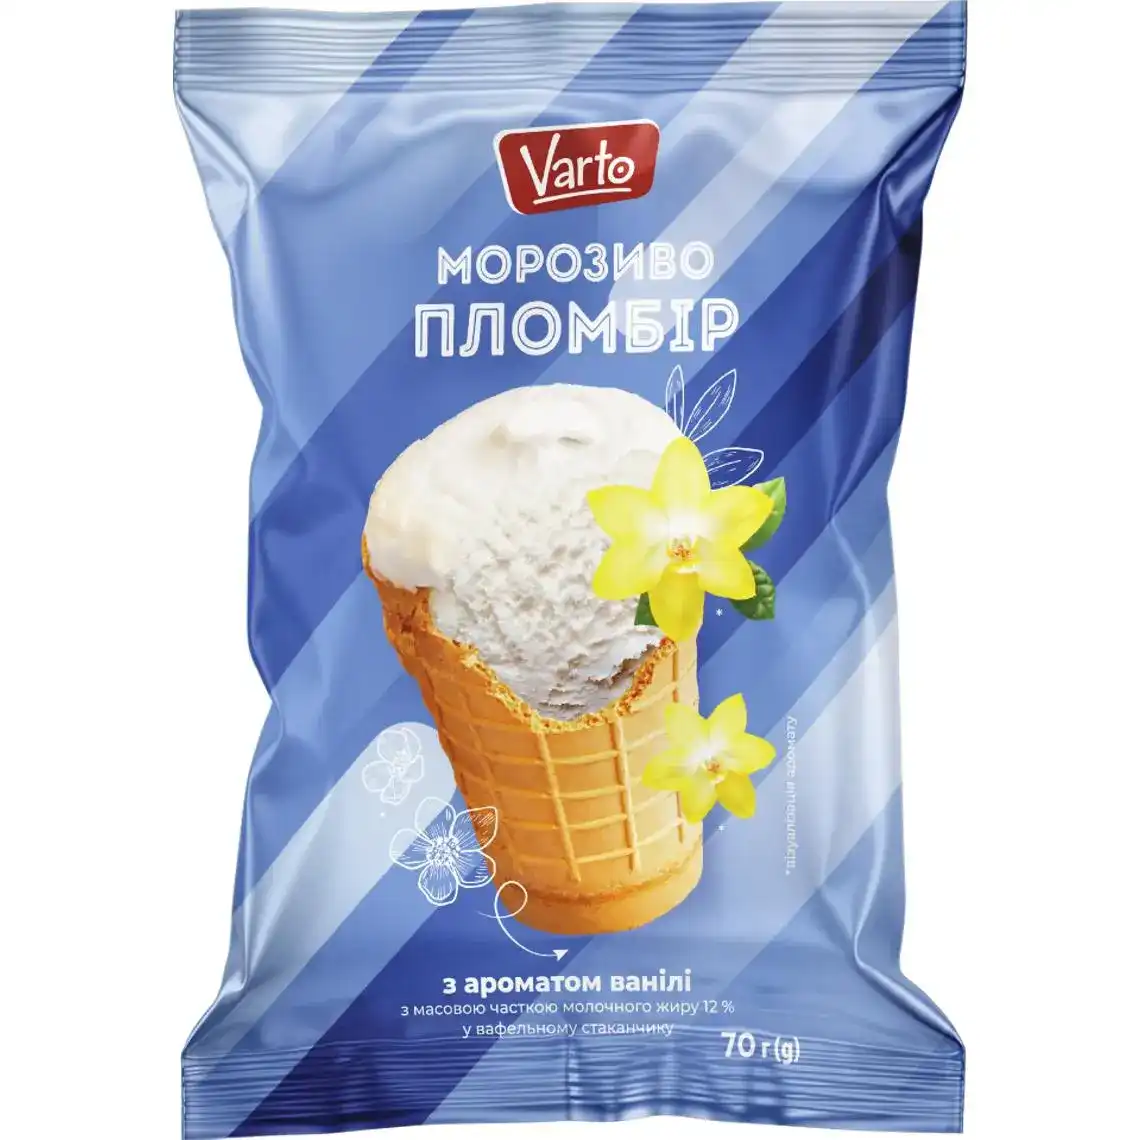 Морозиво Varto пломбір з ароматом ванілі 70 г